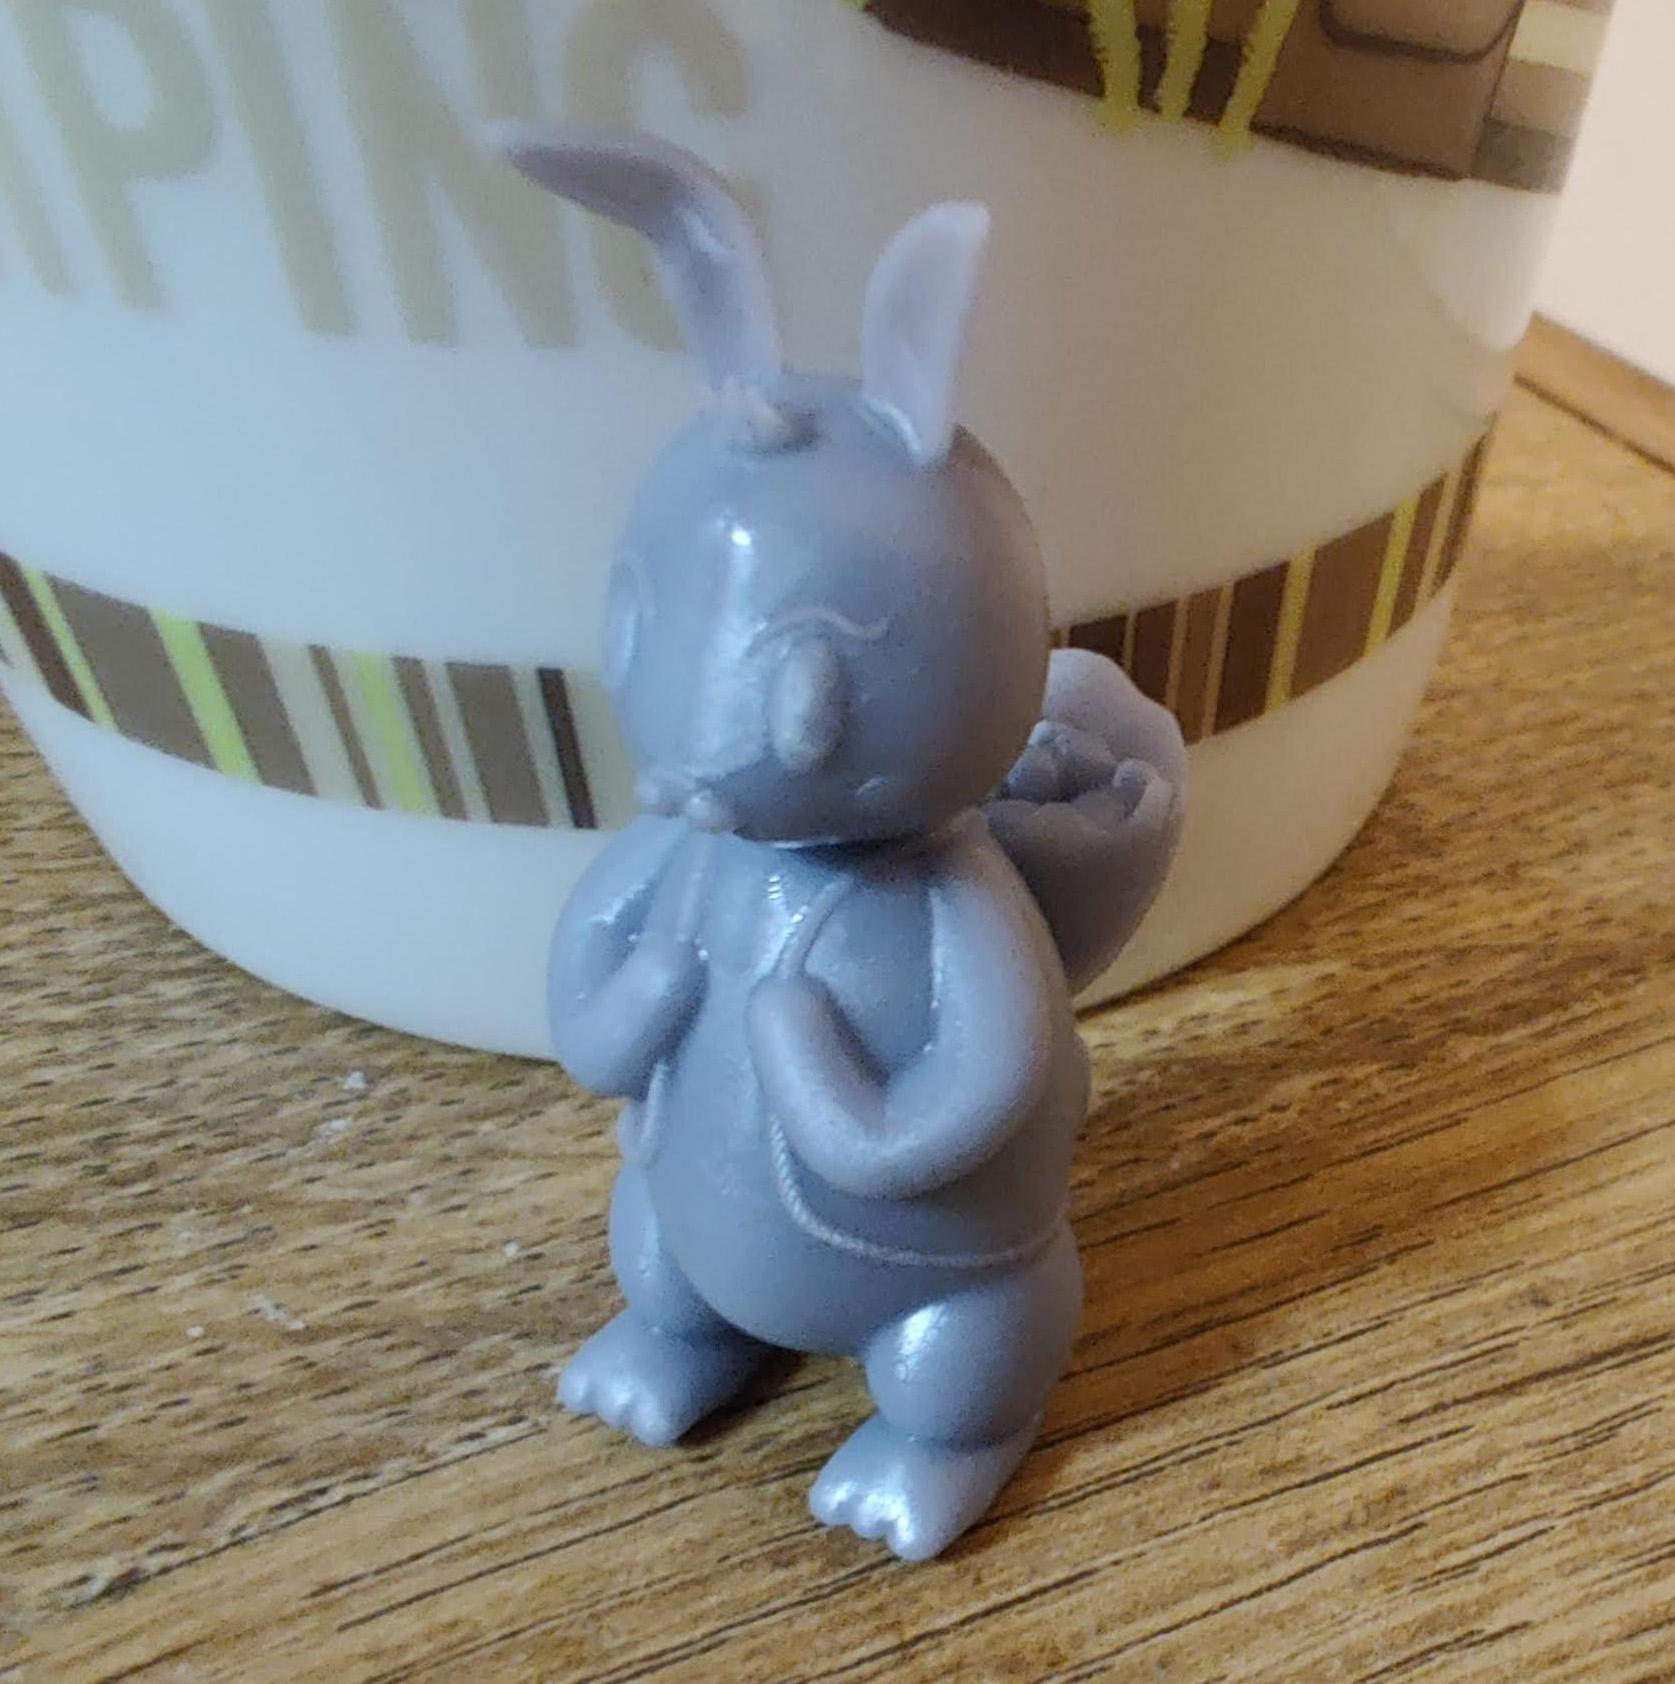 Bun-bun the Easter Bunny  3d model